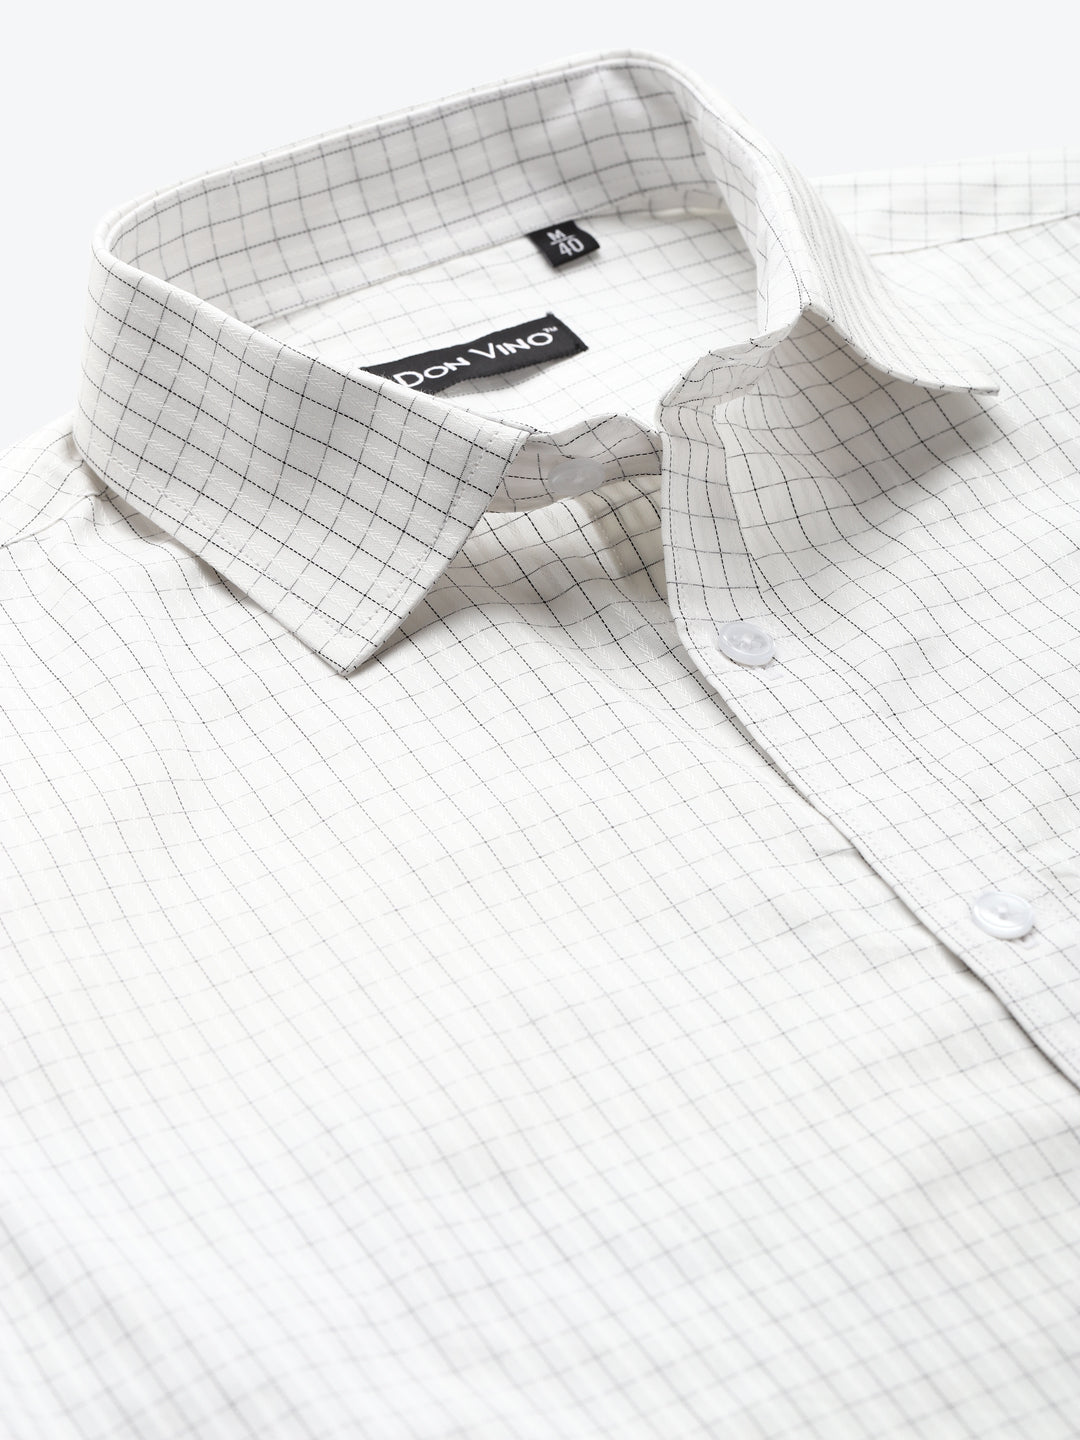 Men's White Checks Slim Fit Shirt by Don Vino